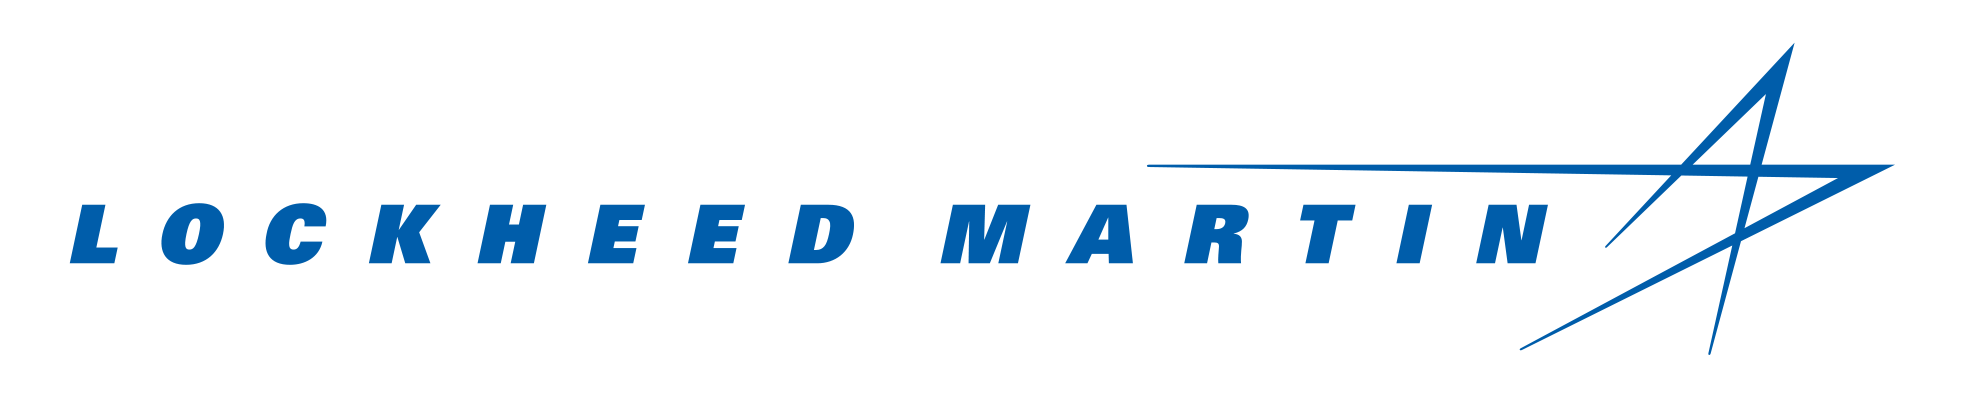 Lockheed Martin Logo PNG Image